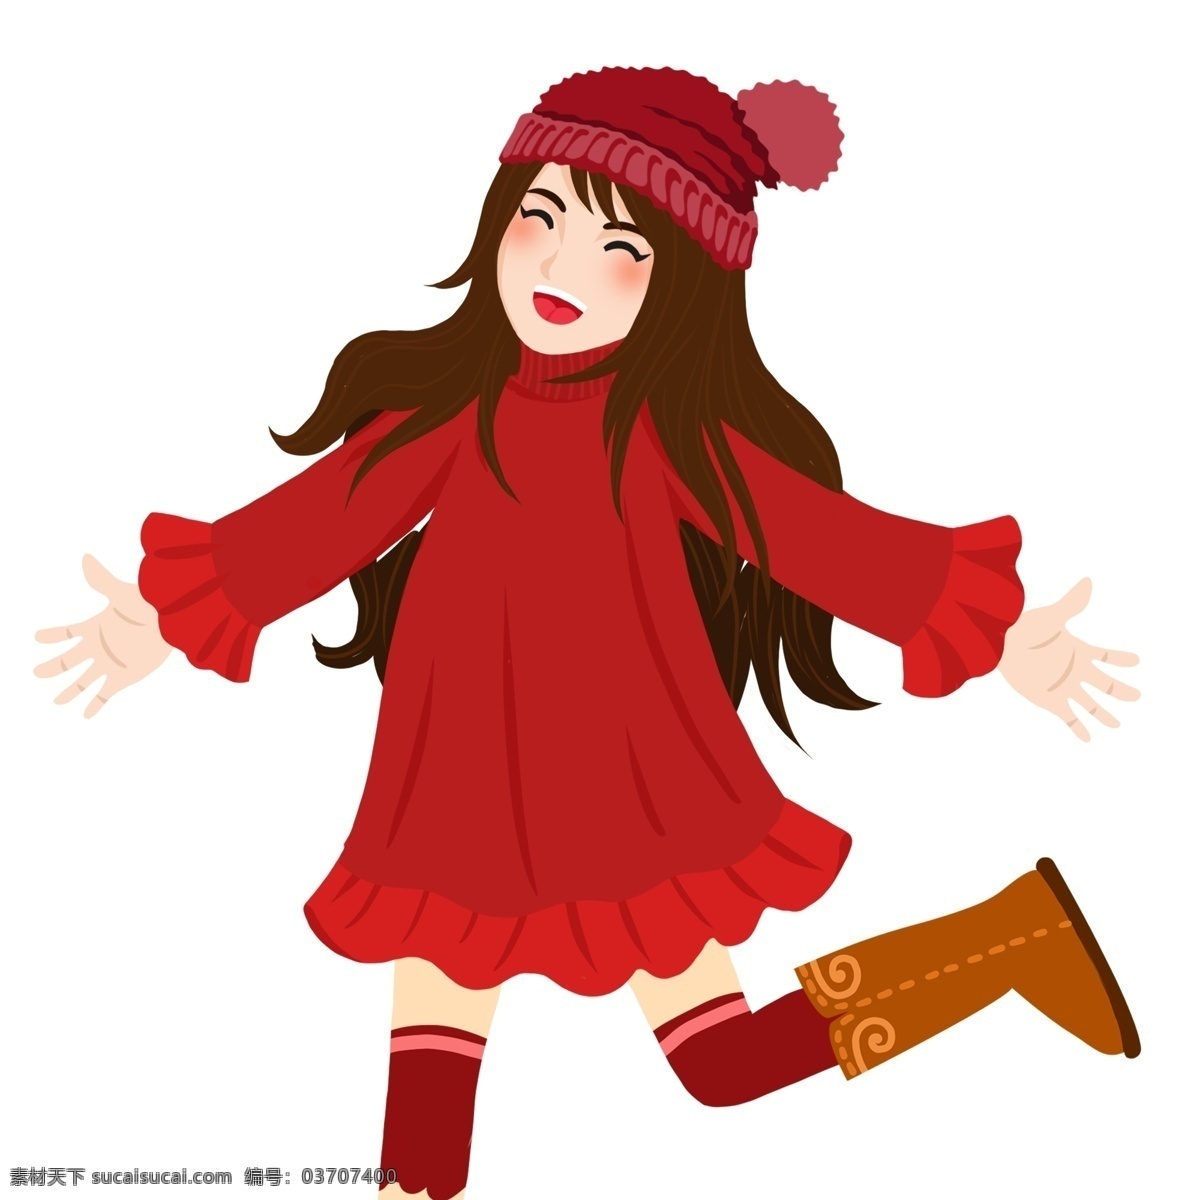 开心 大笑 女孩 人物 商用 元素 卡通 扁平化 插画 红衣 少女 冬季素材